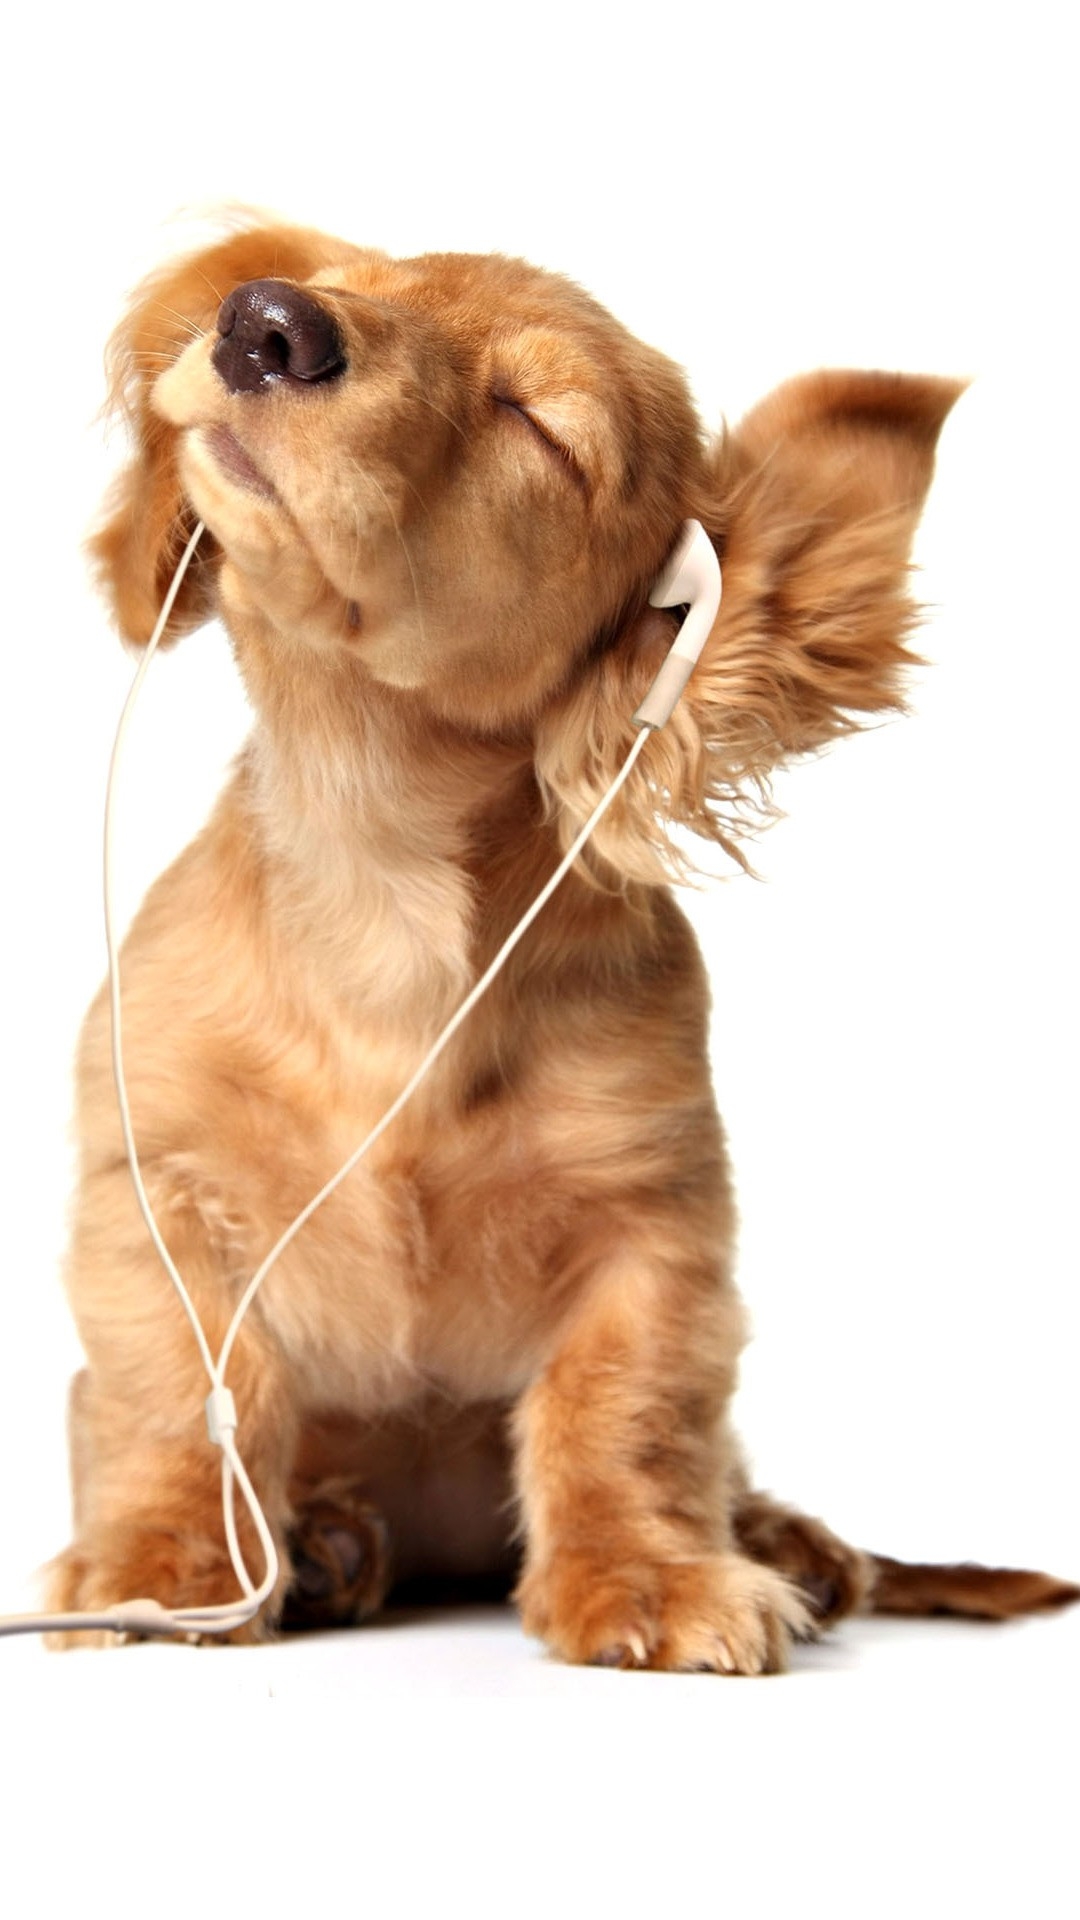 音楽を聞く犬 Iphone14 スマホ壁紙 待受画像ギャラリー